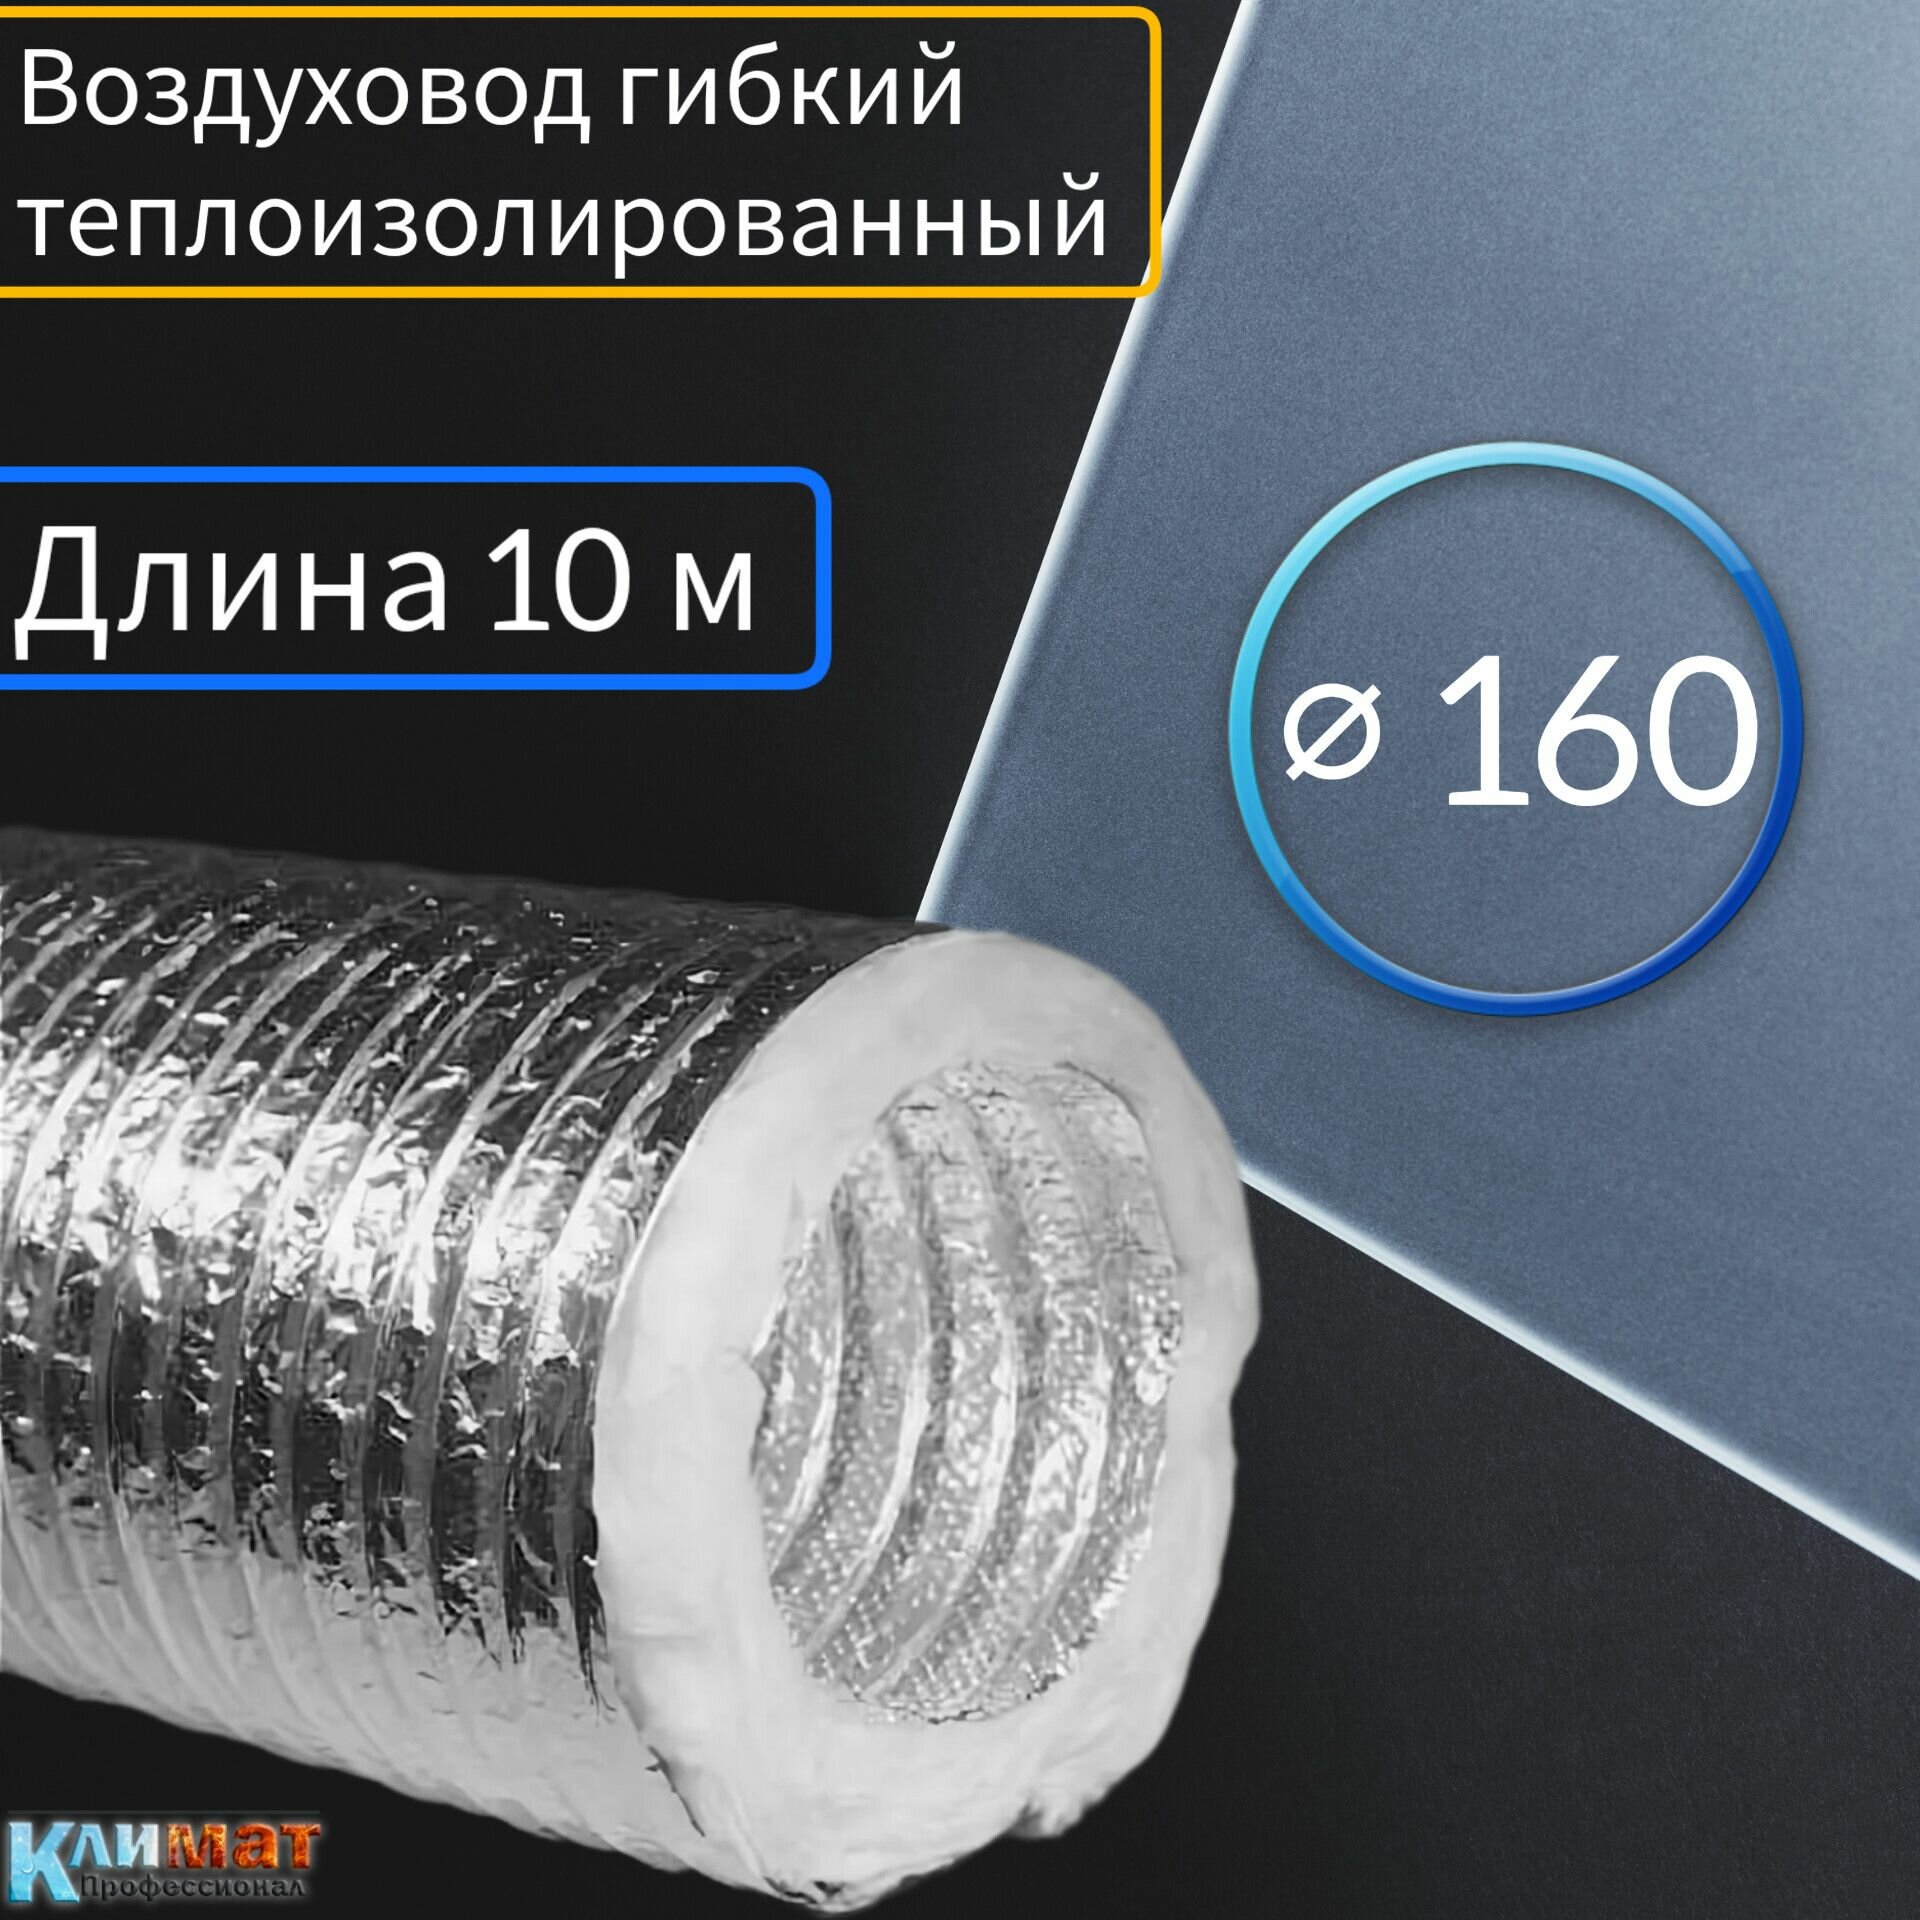 Воздуховод гибкий теплоизолированный ф160 для вентиляции (10м)